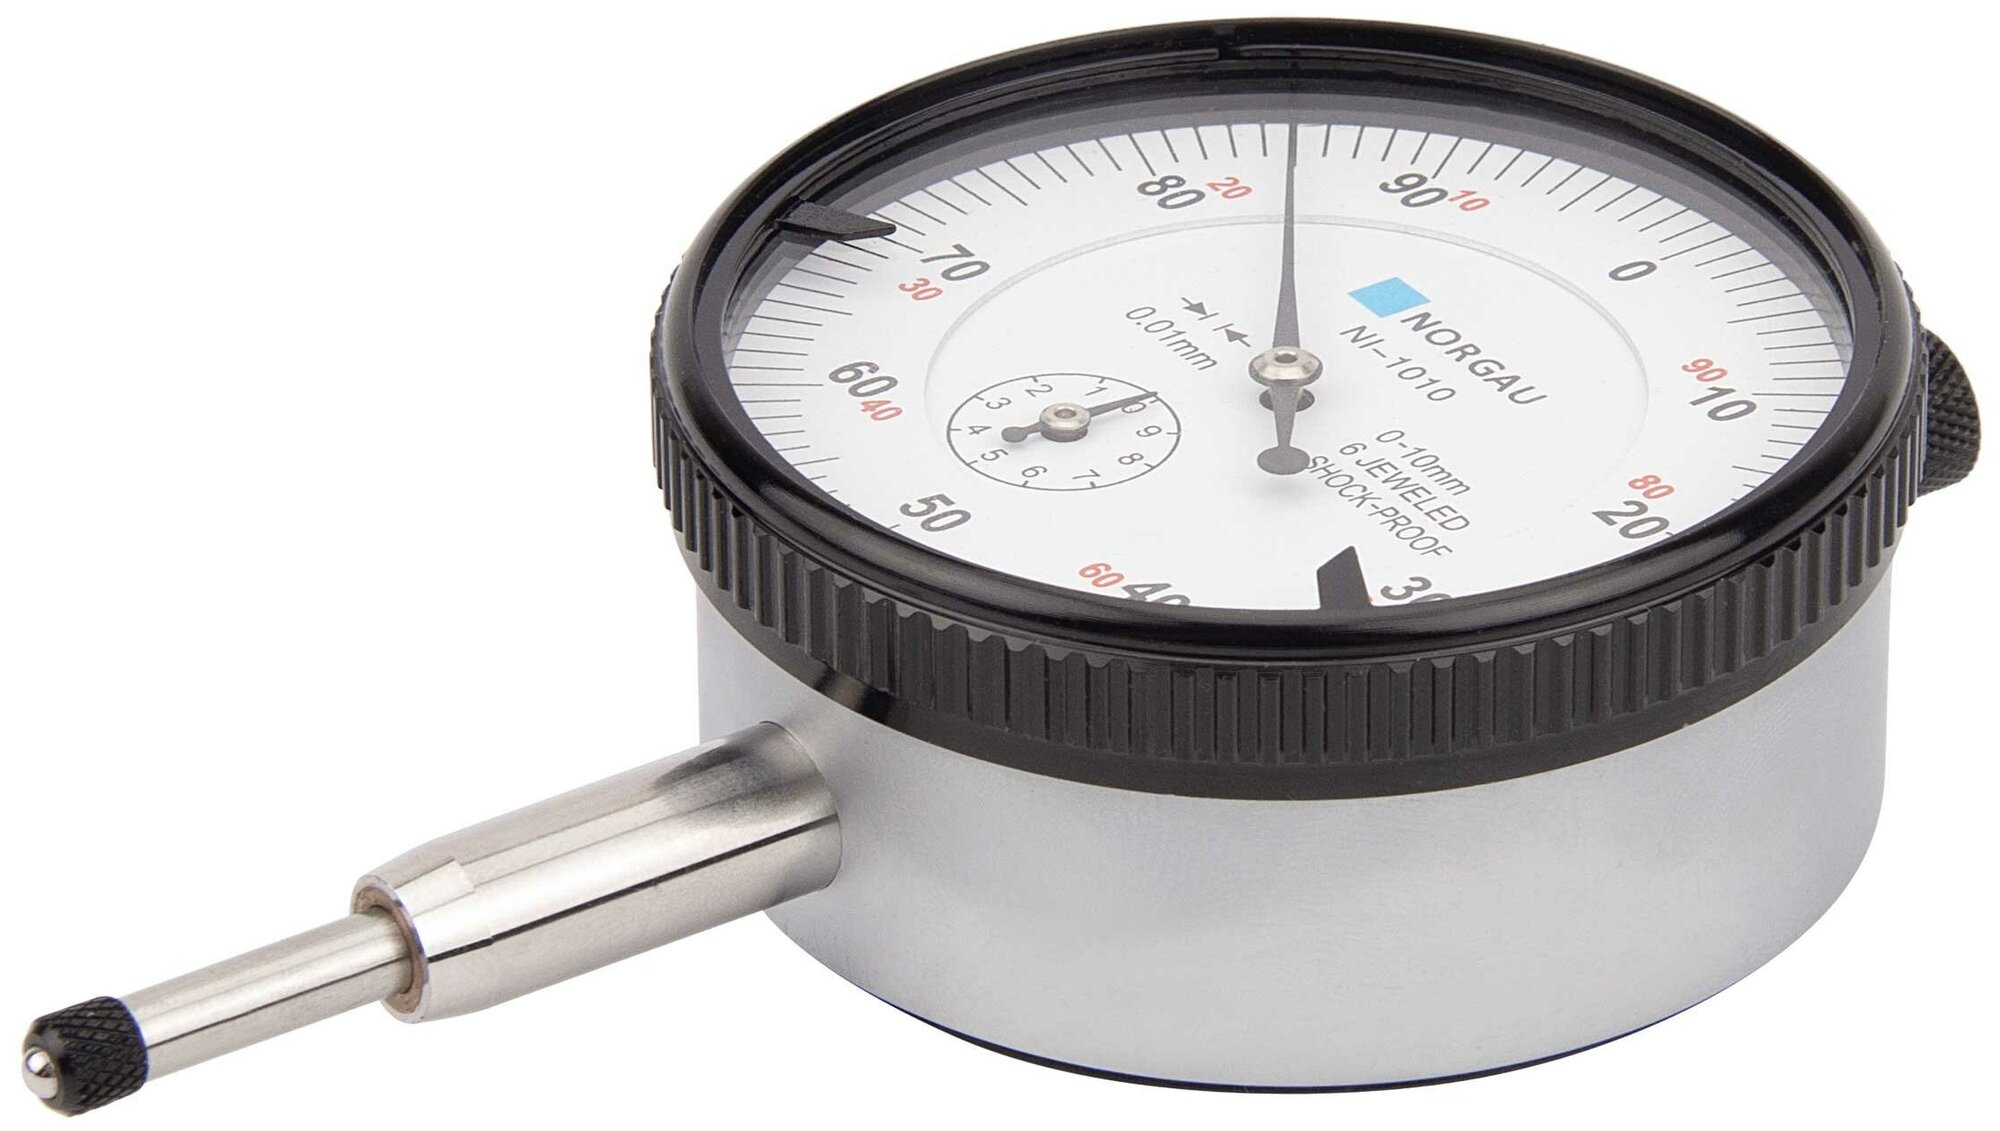 Индикатор часового типа NORGAU Industrial № 63681-16 в Гос. реестре средств измерения 0-10 мм